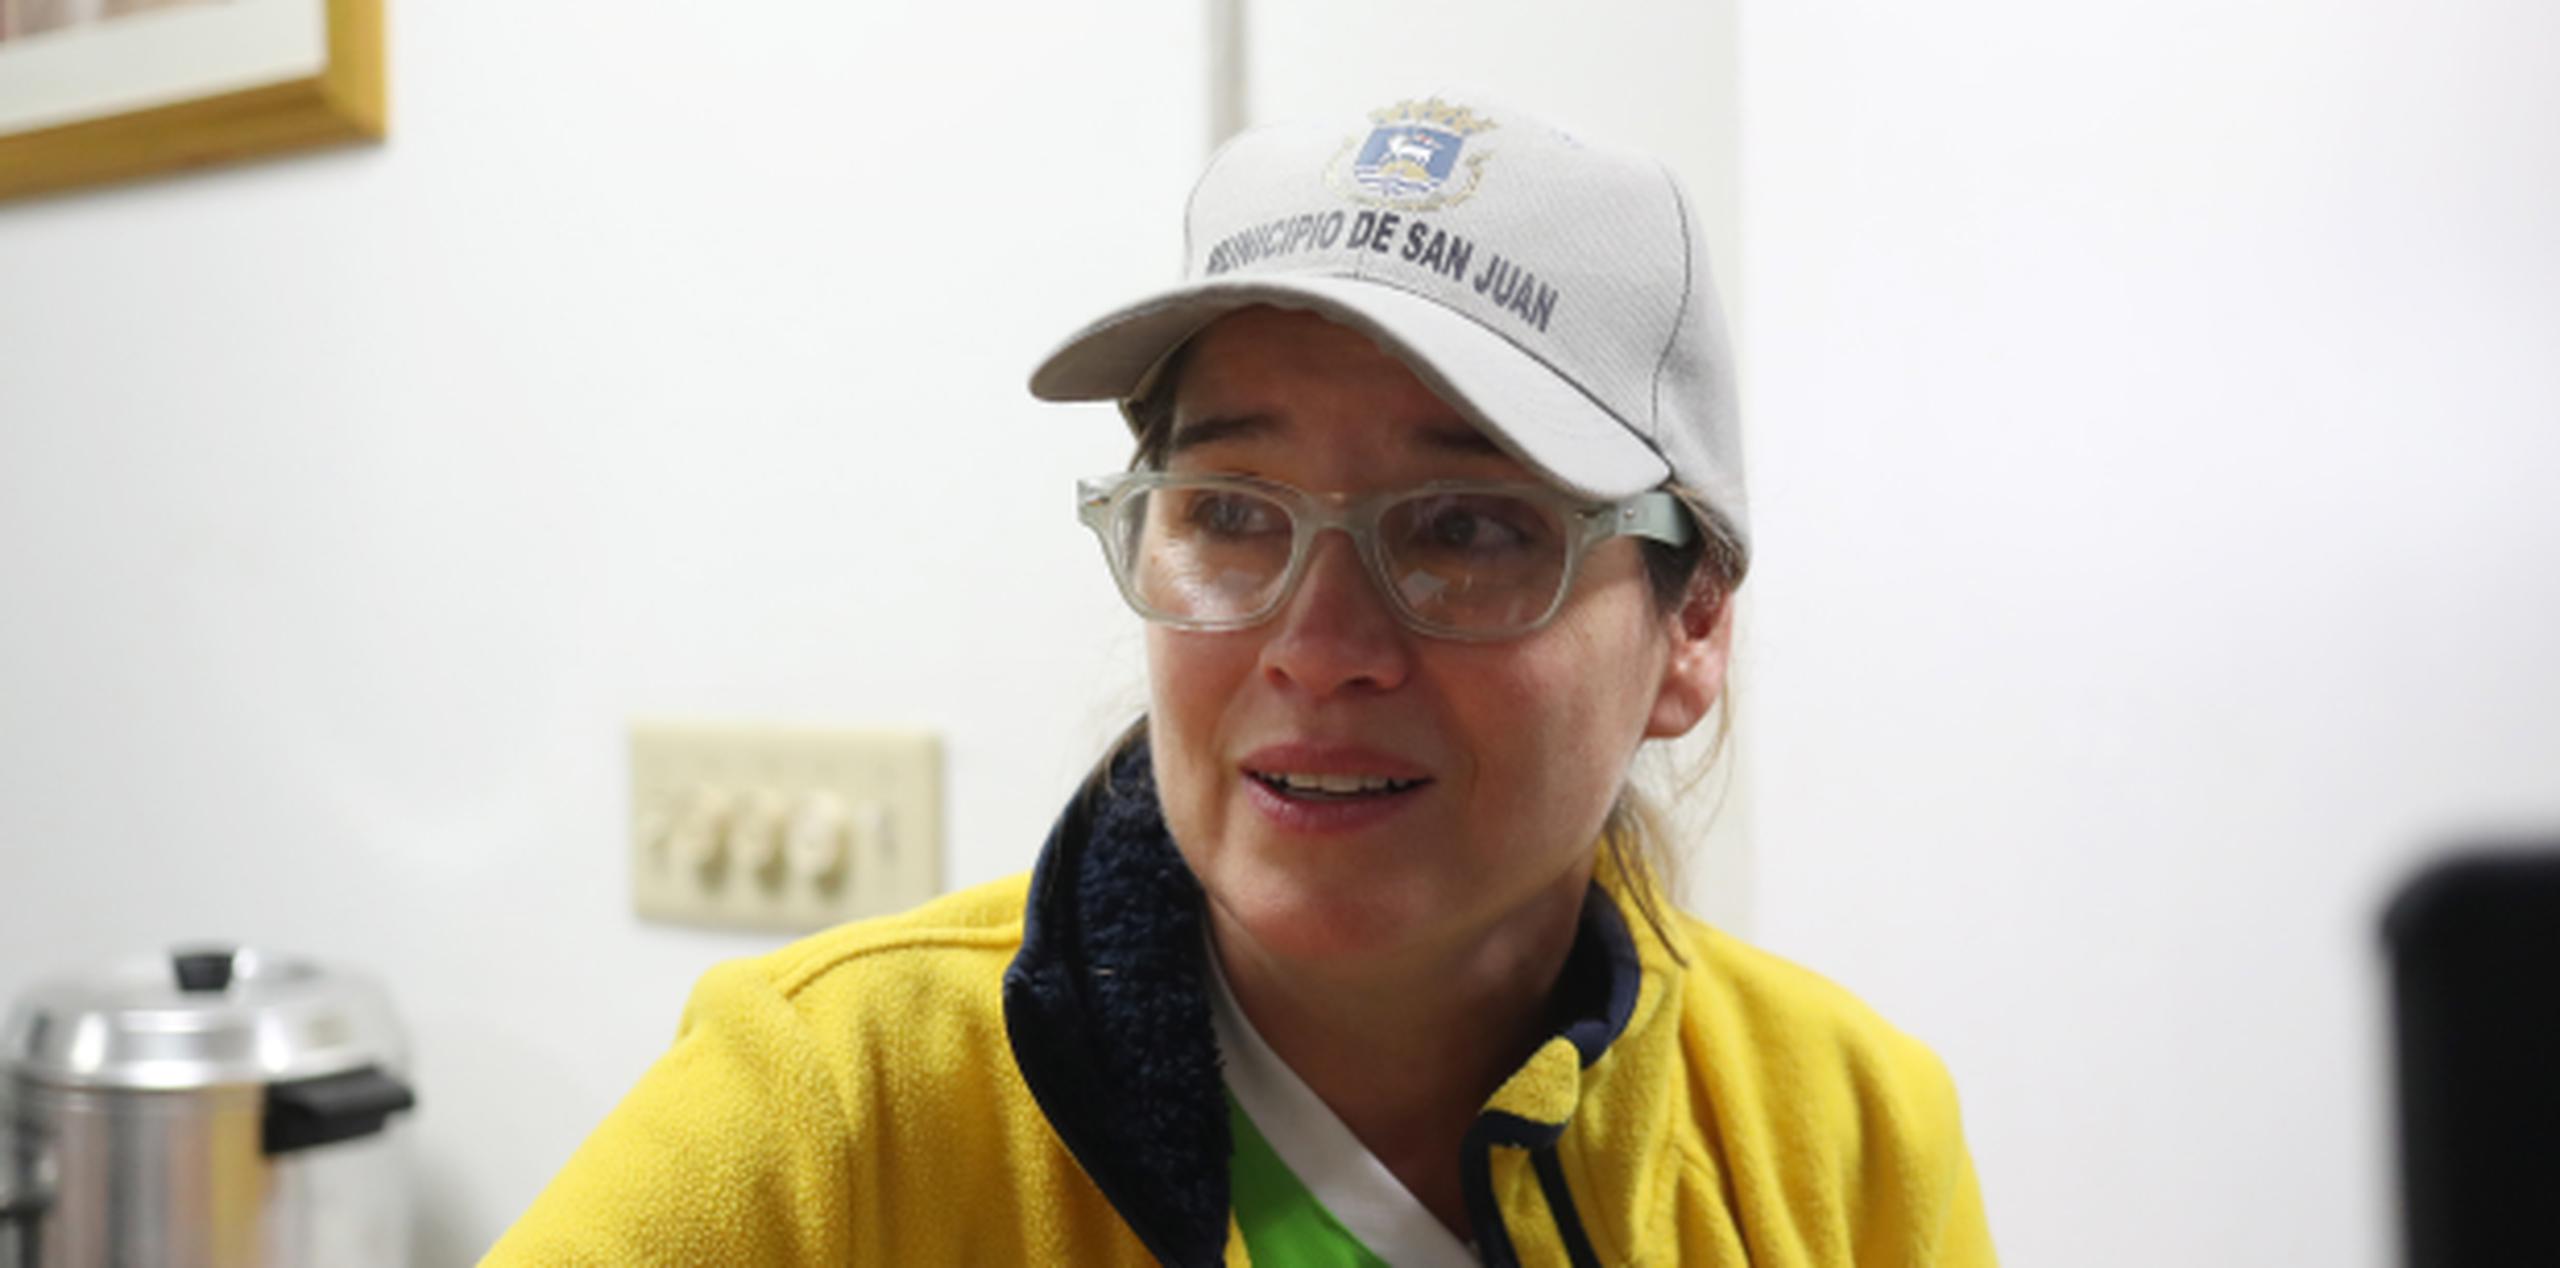 Carmen Yulín Cruz Soto, alcaldesa de San Juan. (vanessa.serra@gfrmedia.com)